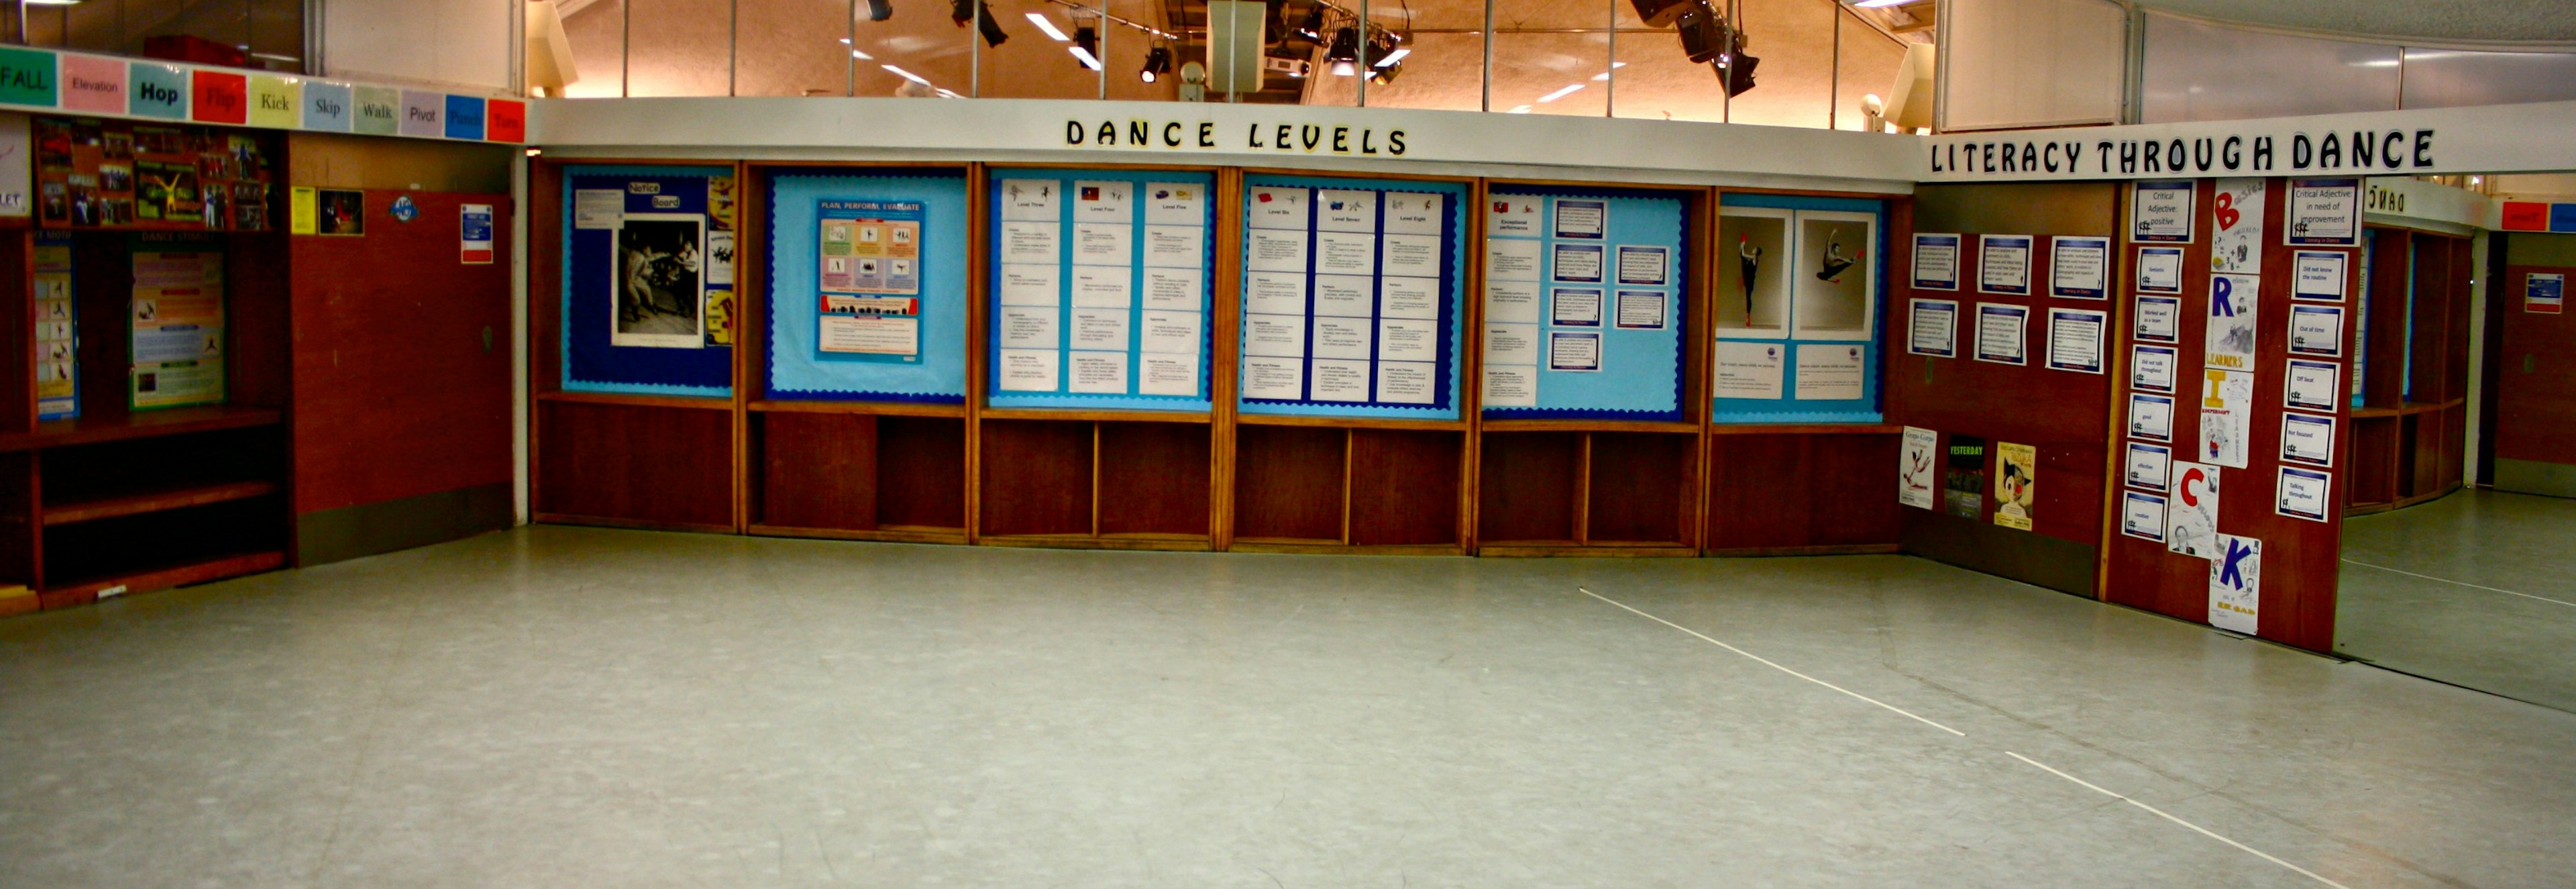 Dance Studios London